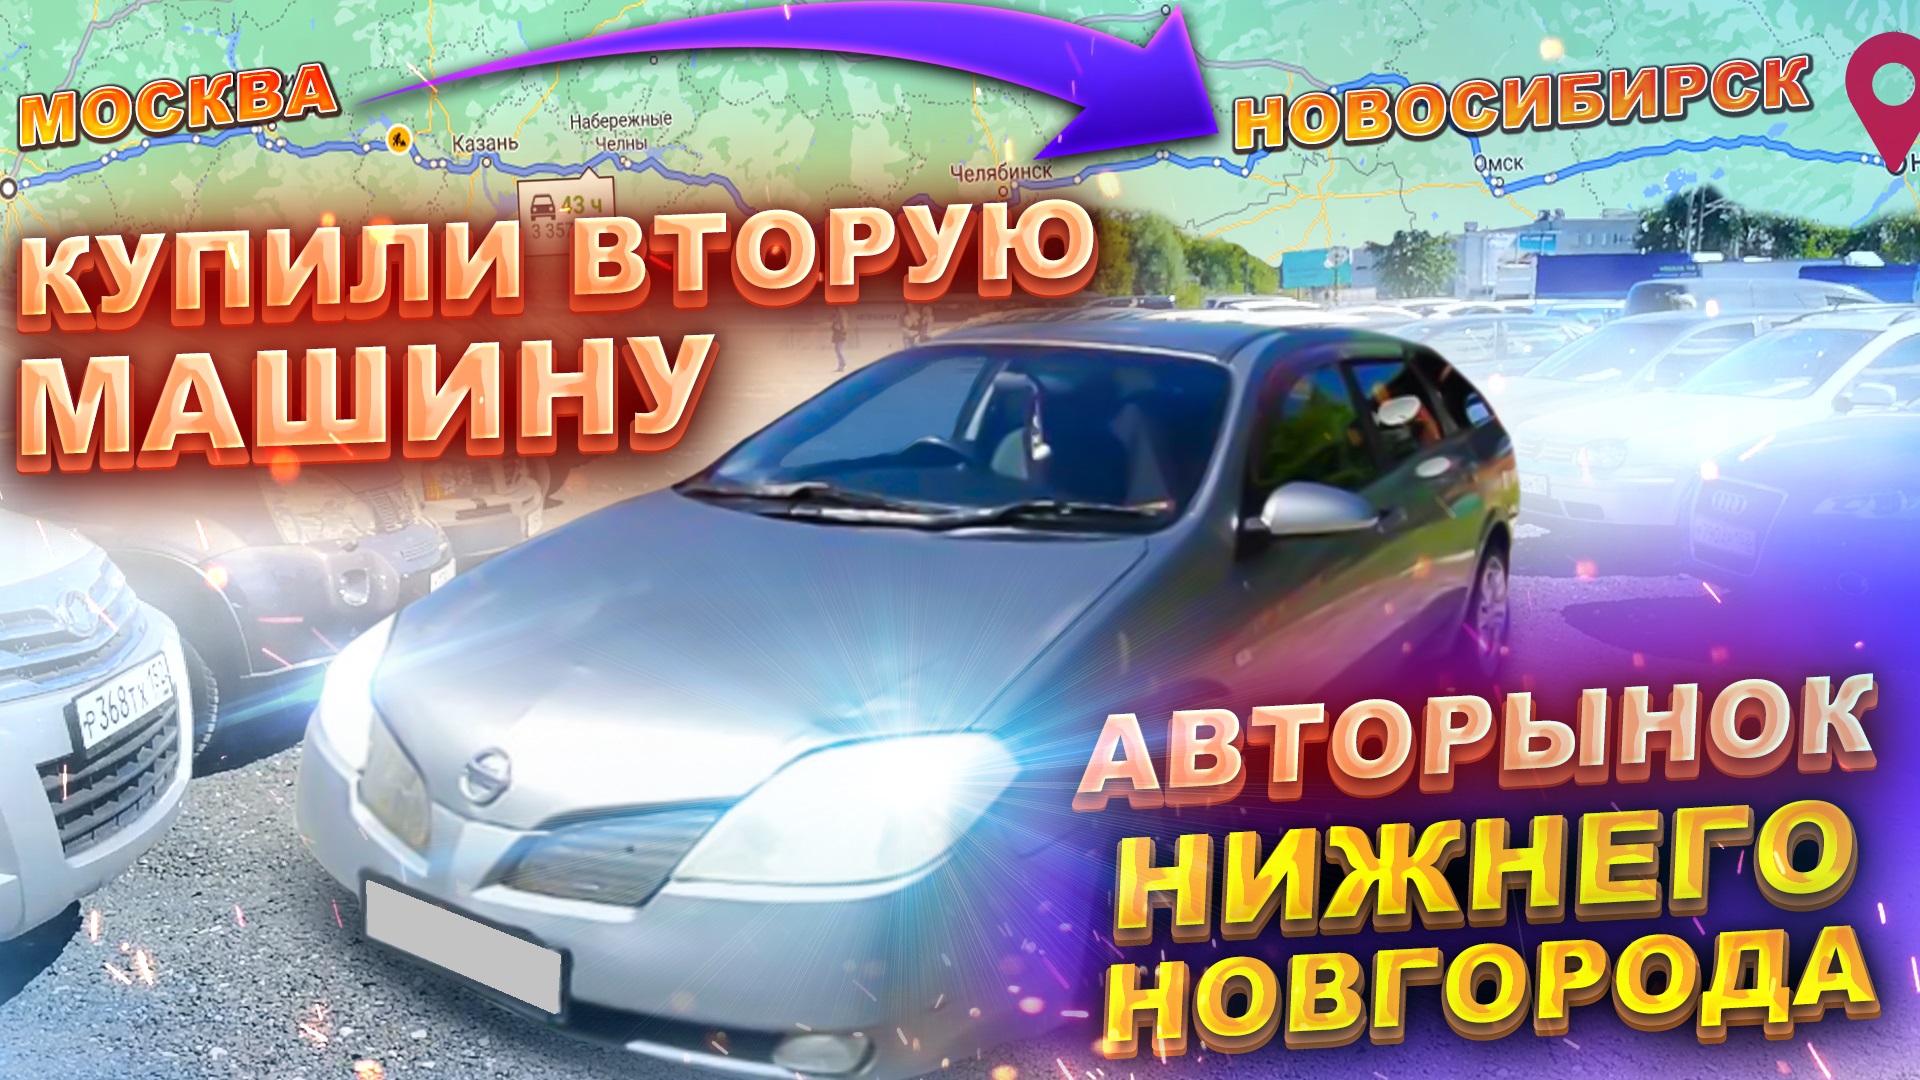 Купили вторую машину. Авторынок Нижнего Новгорода. Перегон Москва - Новосибирск.